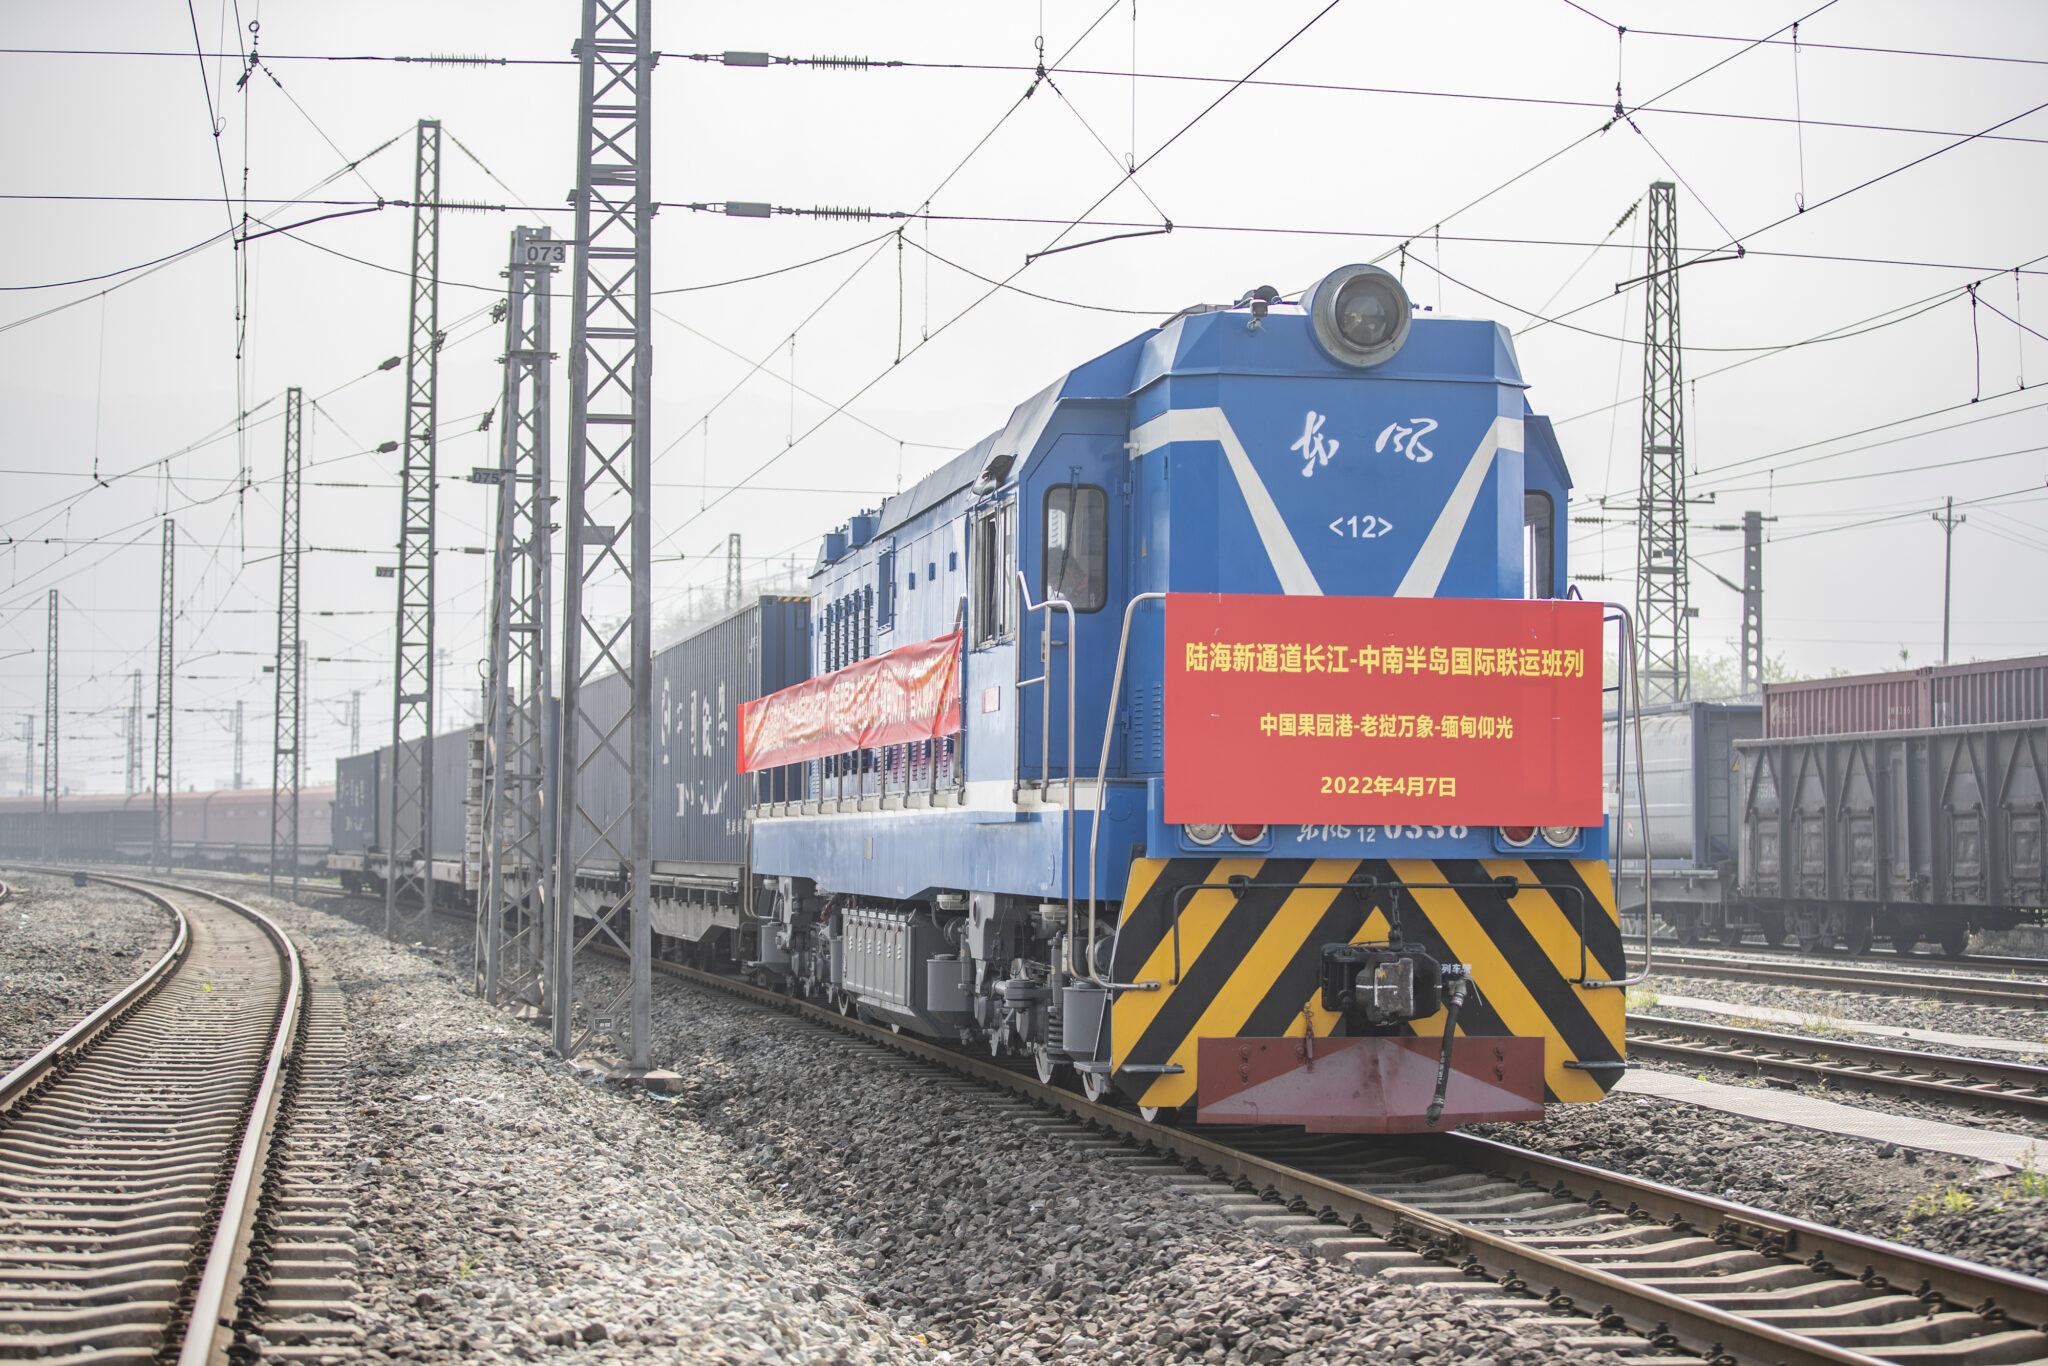 Китайский грузовой поезд. Фото Хуан Вэй/Синьхуа через ZUMA Press / Scanpix / LETA